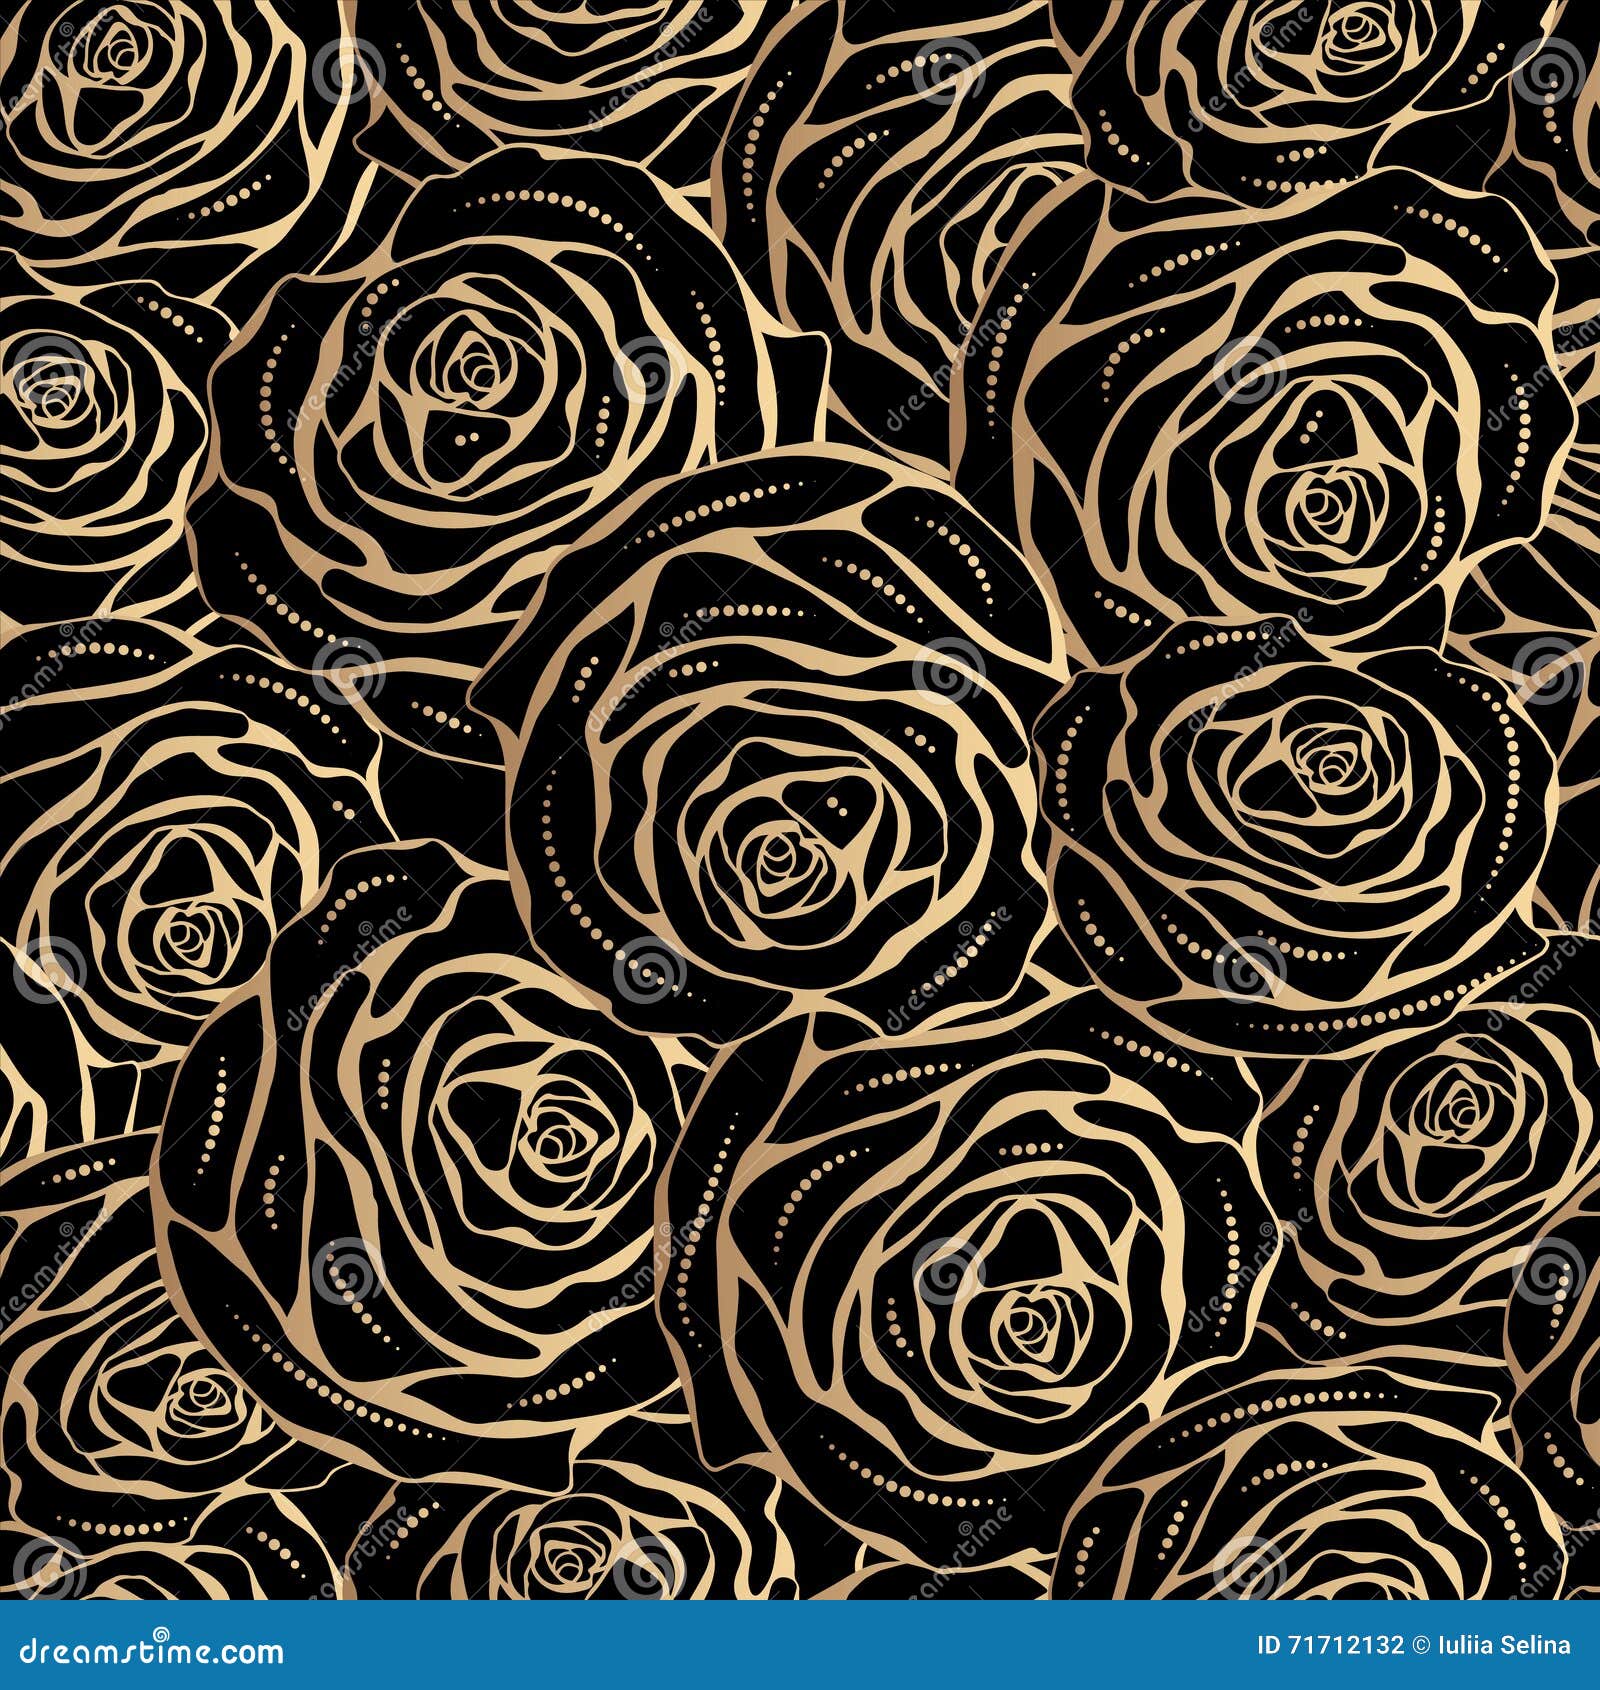 Tận hưởng vẻ đẹp hoàn mỹ của những bông hoa hồng đính phủ vàng với các cánh hoa tươi tắn. Hãy thưởng thức những chi tiết tinh tế và đường cong mềm mại trên từng bông hoa, tạo nên sự tinh tế và quý phái. (\